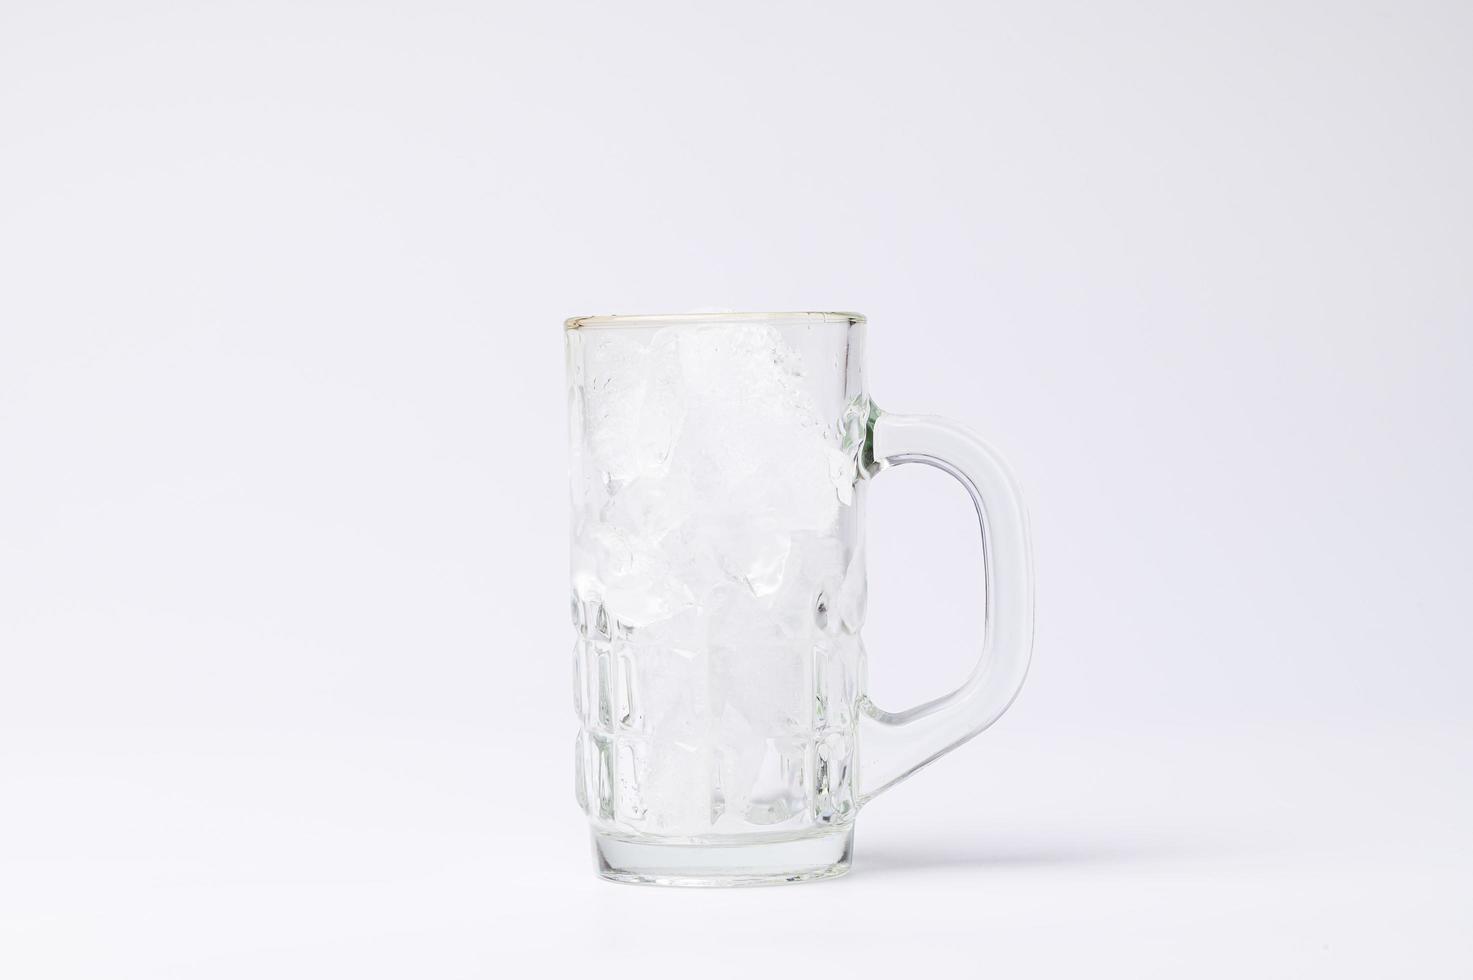 vaso con hielo sobre un fondo blanco foto